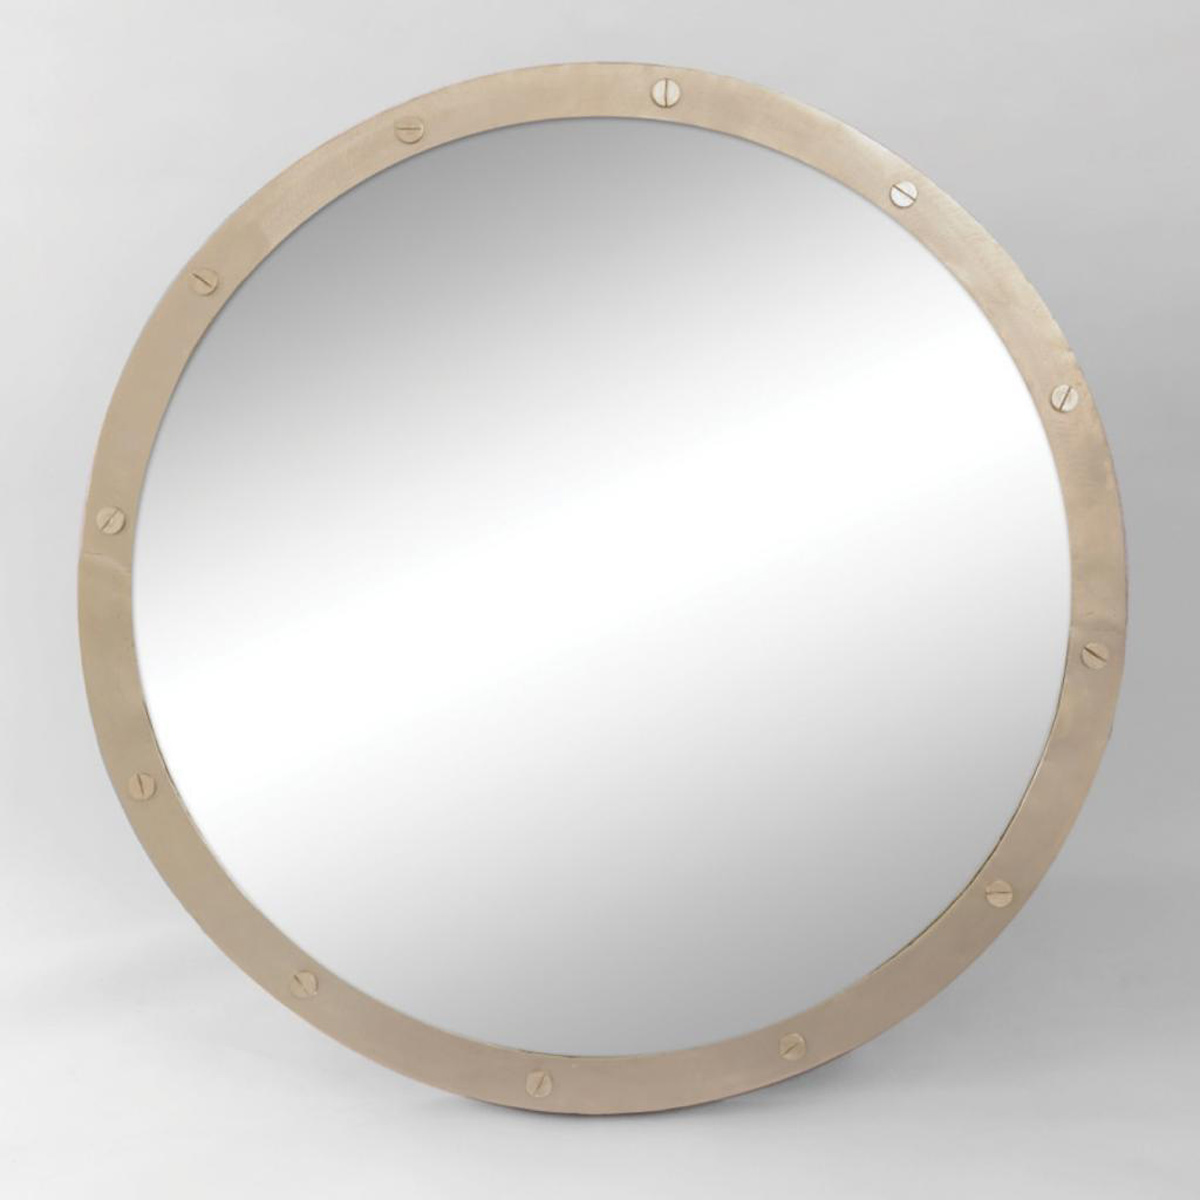 Ren-Wil Hudson Mirror - Nickel Plated